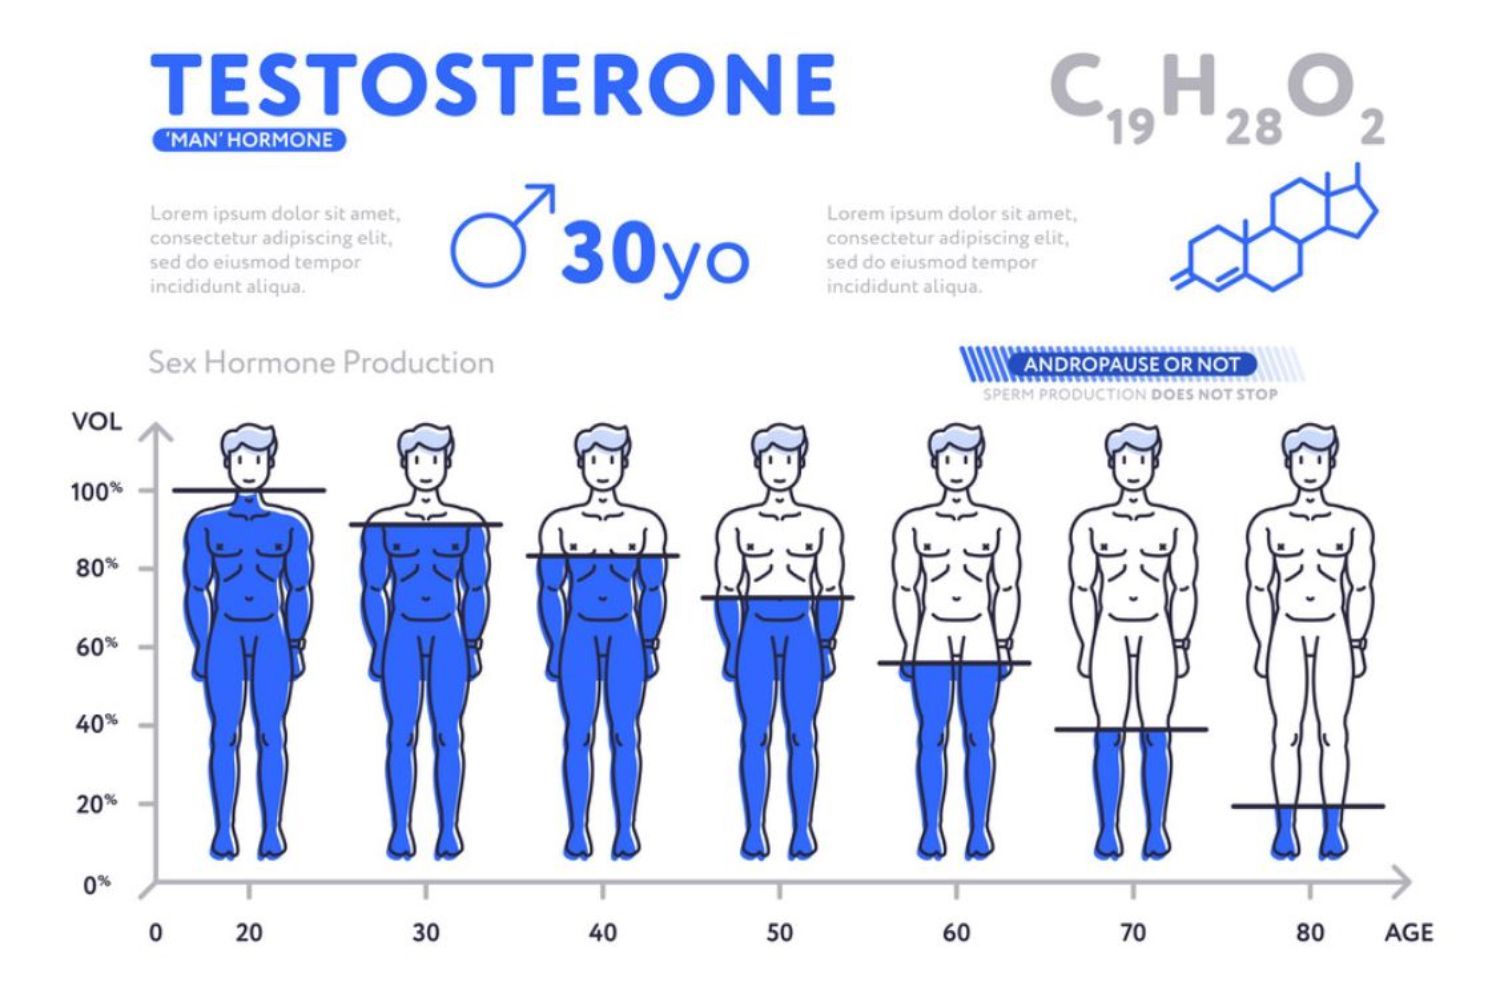 Testosterone thay đổi thế nào theo độ tuổi?